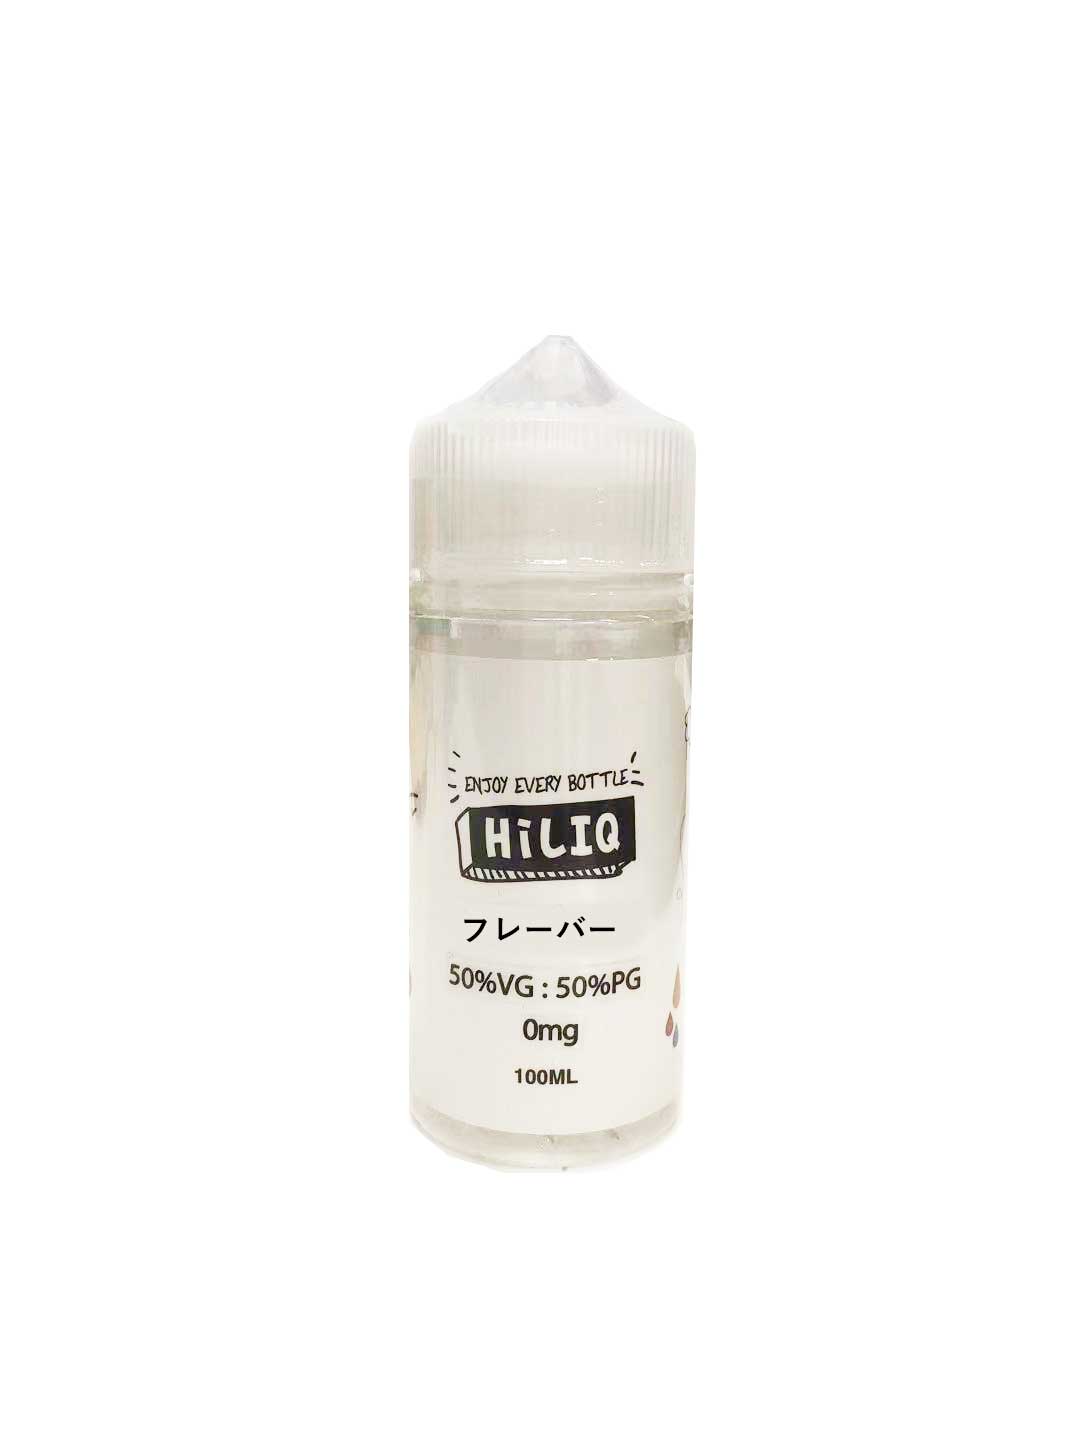 電子タバコ リキッド HiLIQ ハイリク 100ml VG50/PG50 ドリンク系 | パワーモンスター